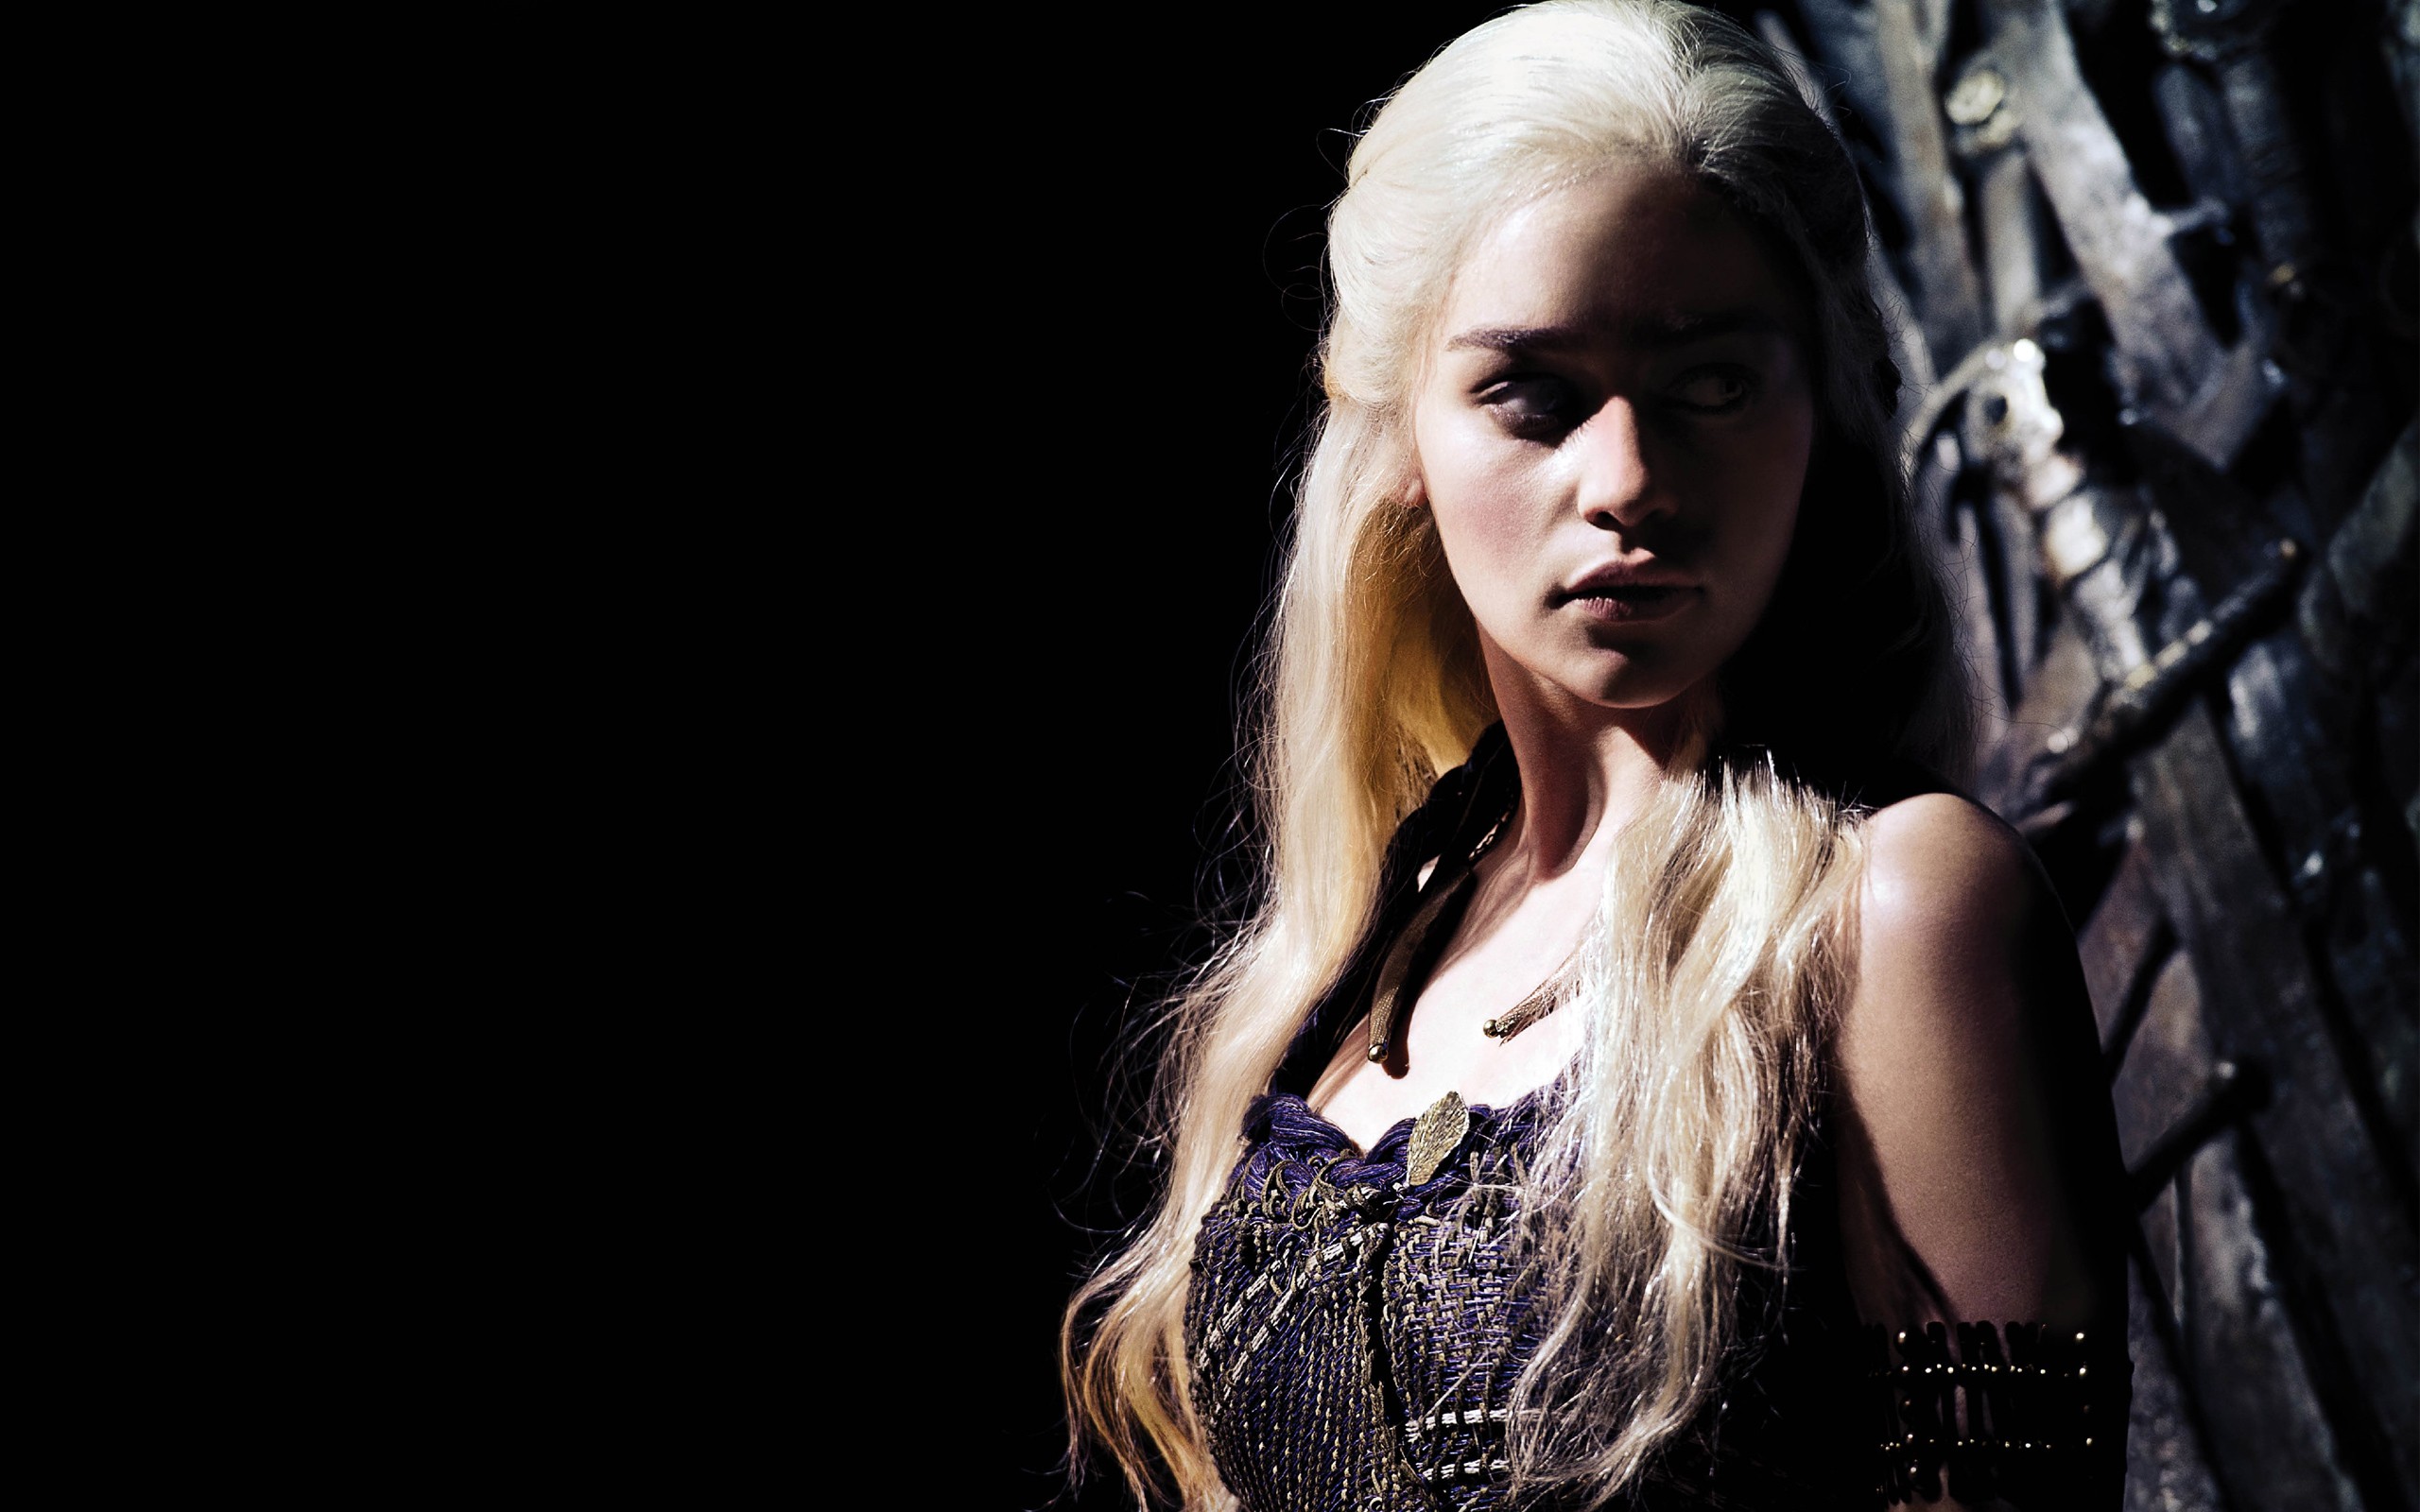 People 2560x1600 TV series Game of Thrones Daenerys Targaryen fantasy girl film stills Emilia Clarke British women actress blonde long hair looking away dark background